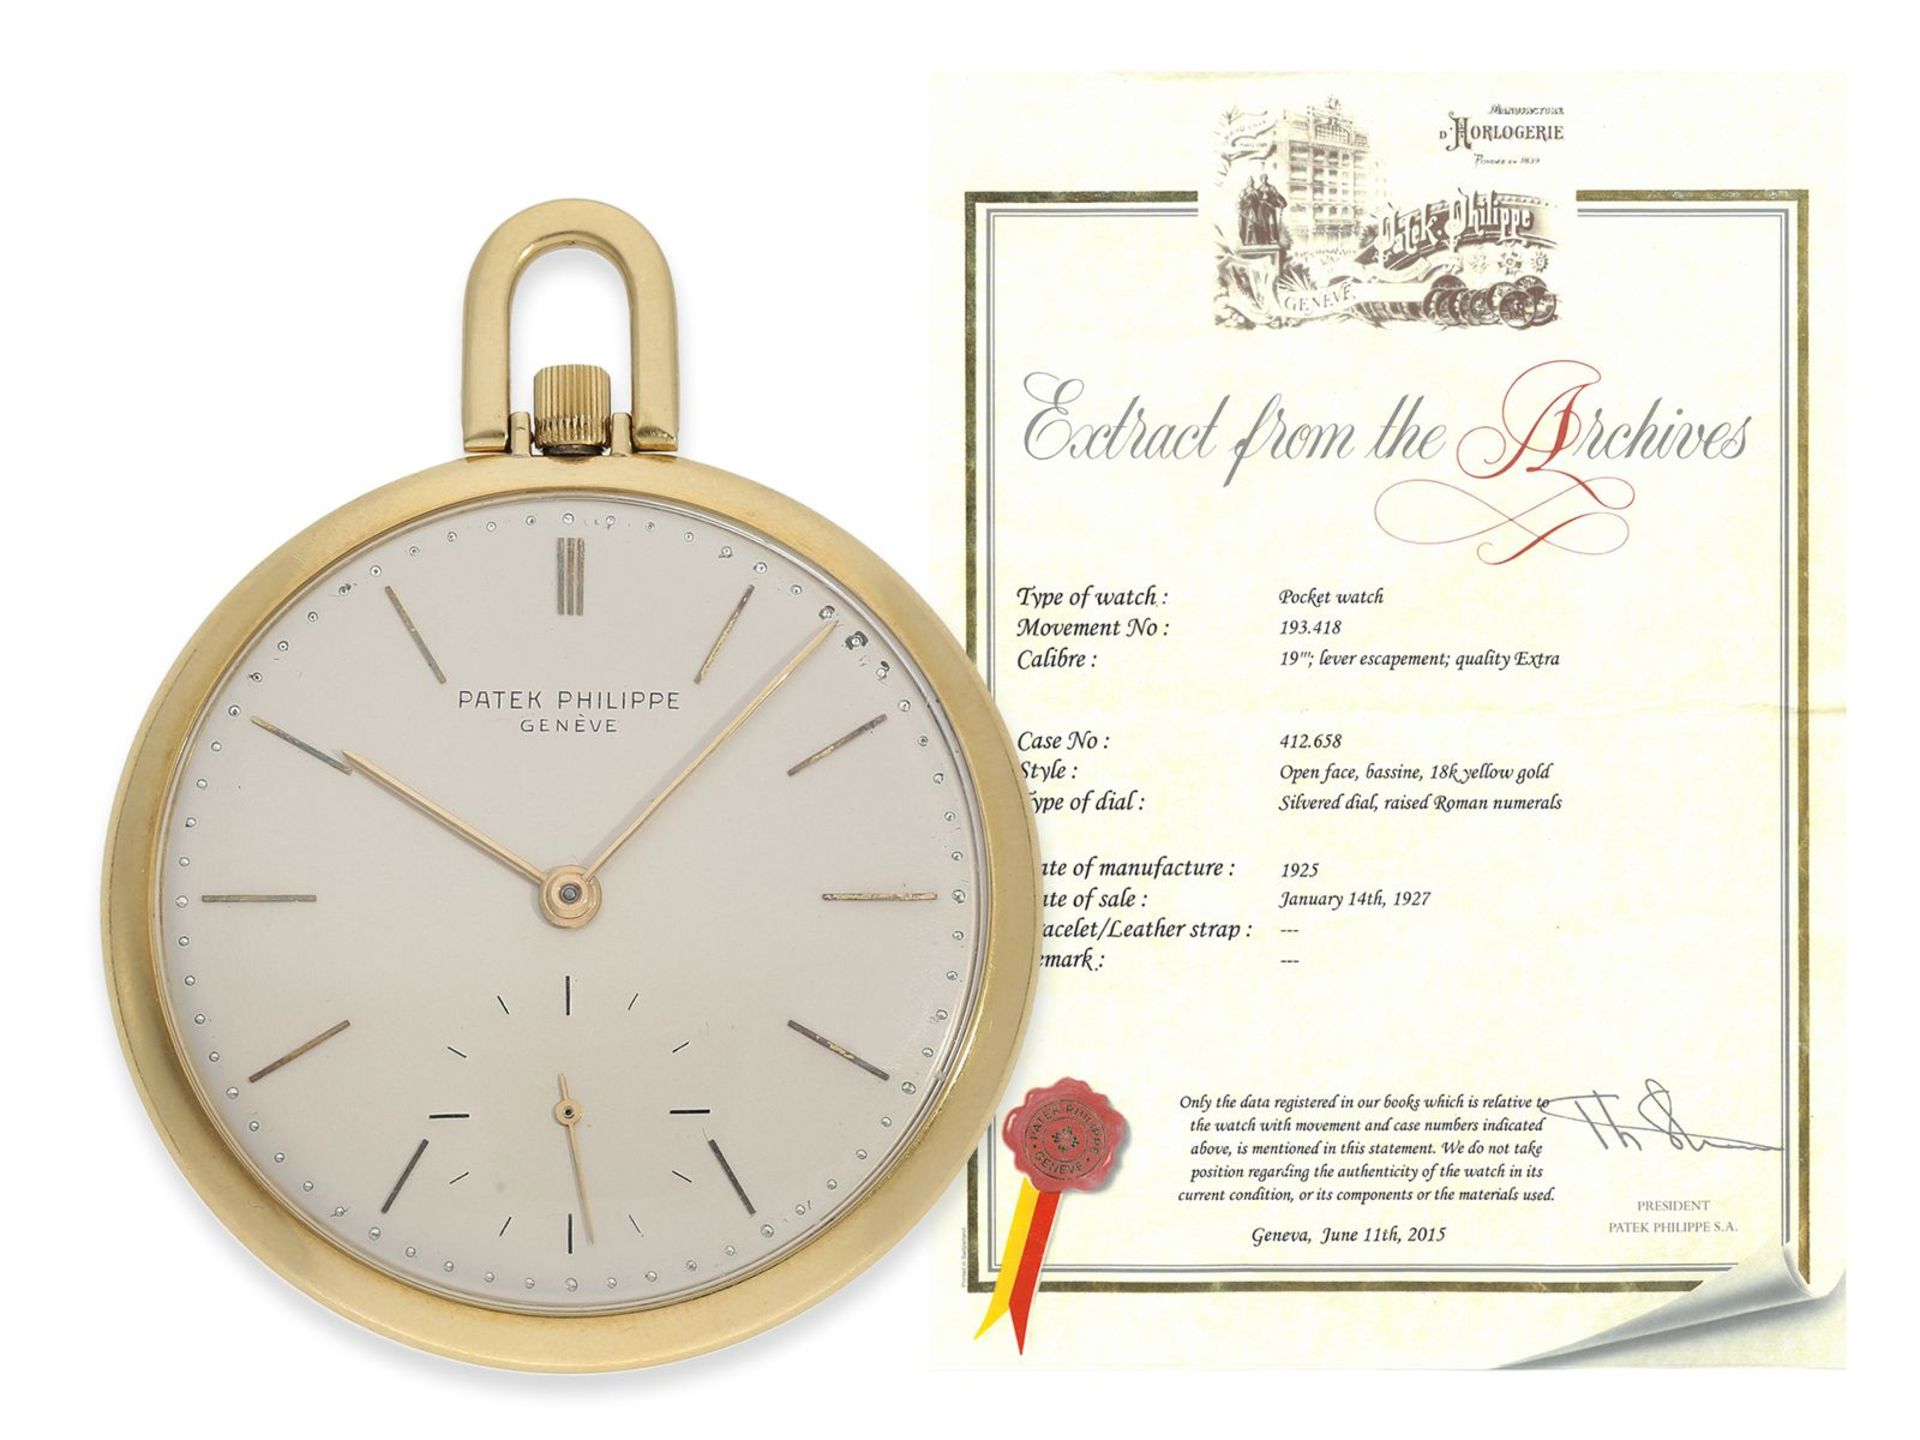 Taschenuhr: extrem seltene Patek Philippe Frackuhr in der Qualität Ankerchronometer "Extra", Genf